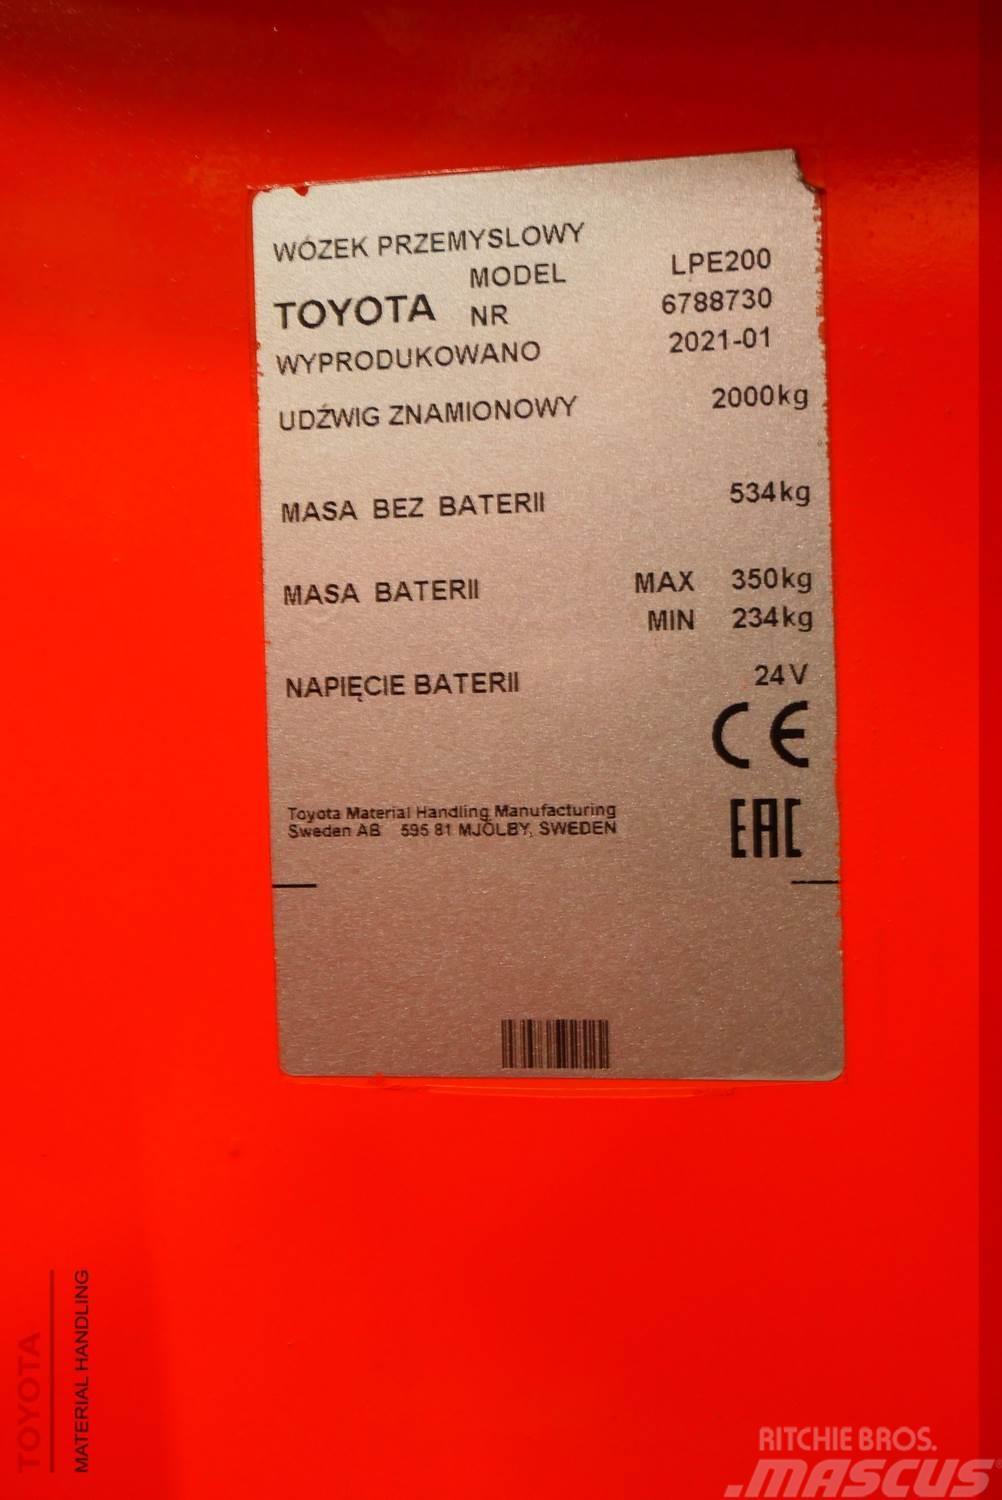 Toyota LPE200 Transpaletas Eléctricas con plataforma